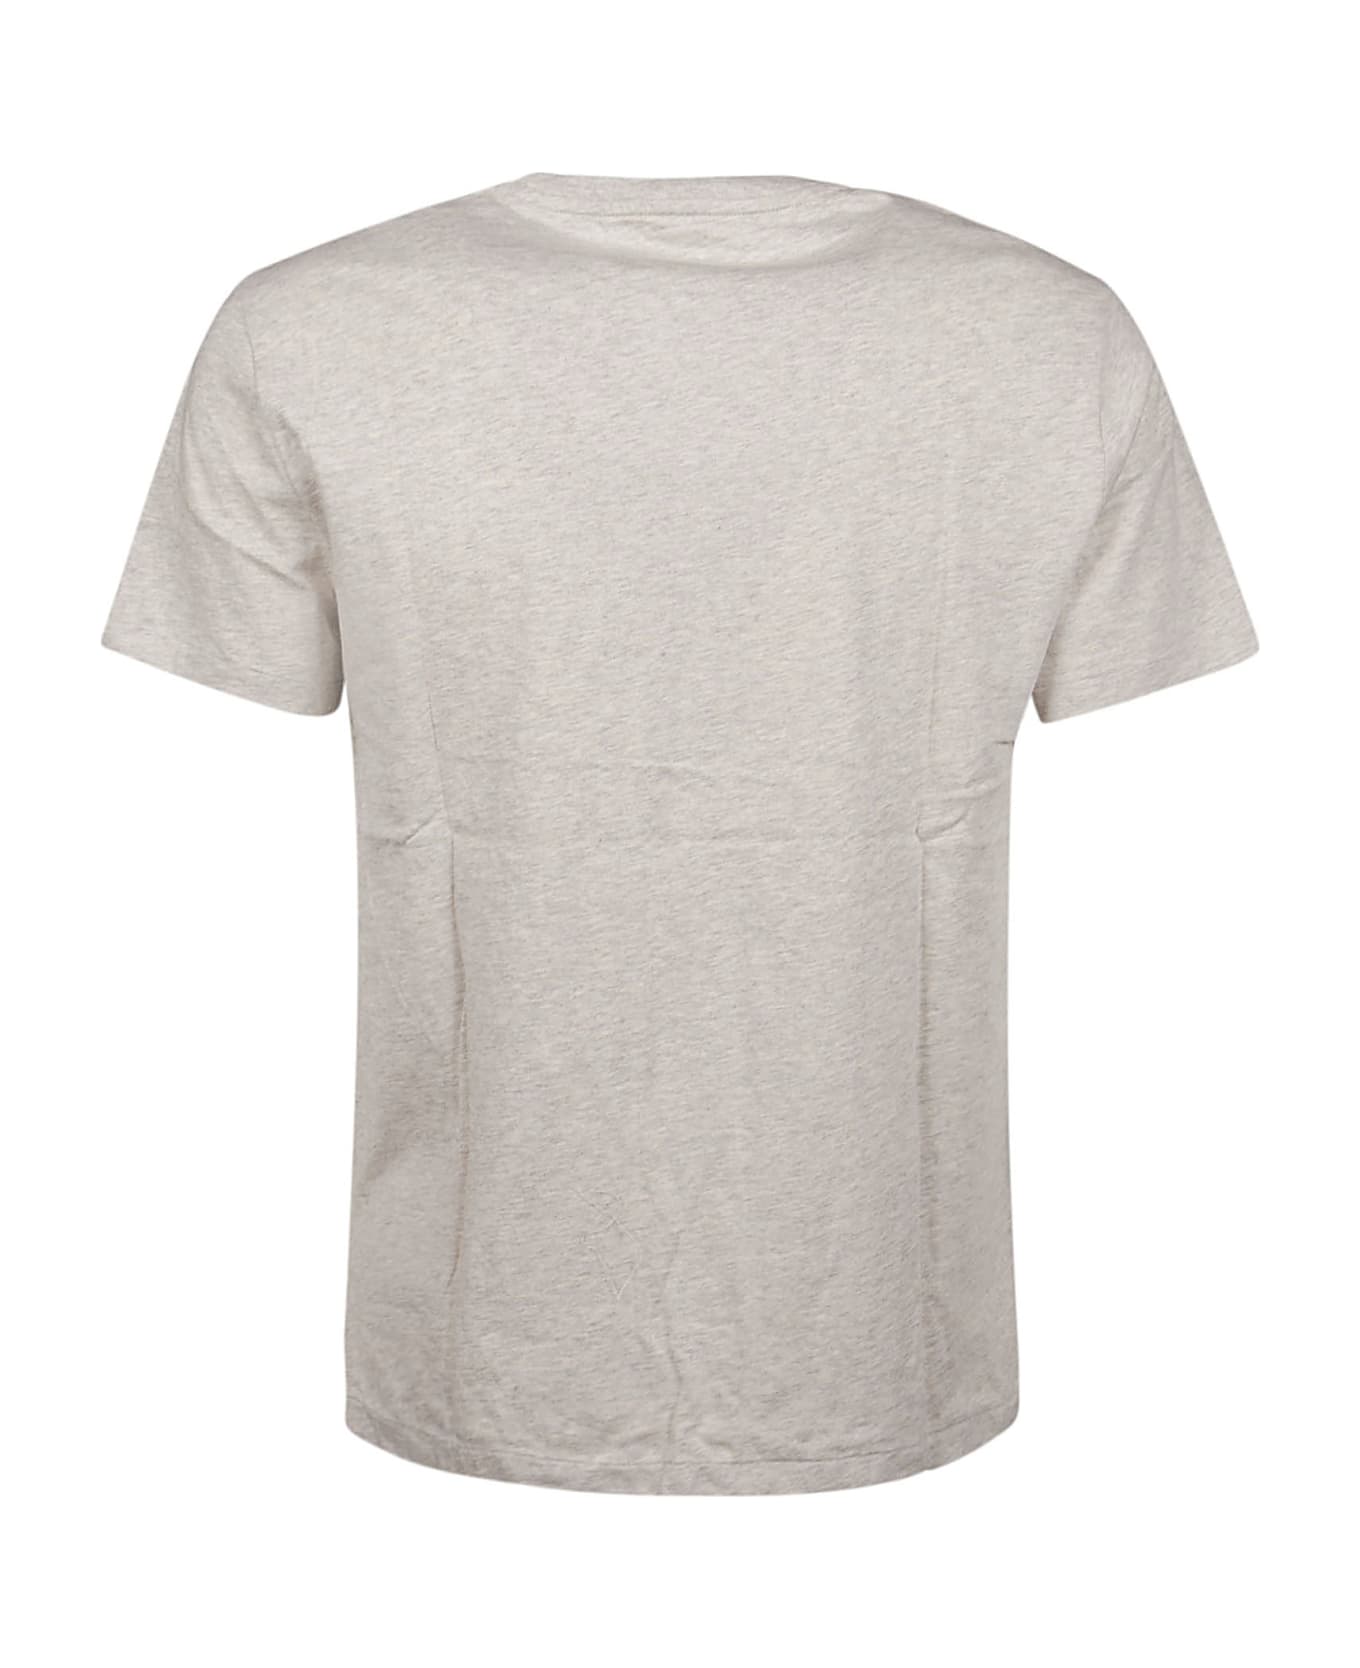 Polo Ralph Lauren T-shirt - Sport heather